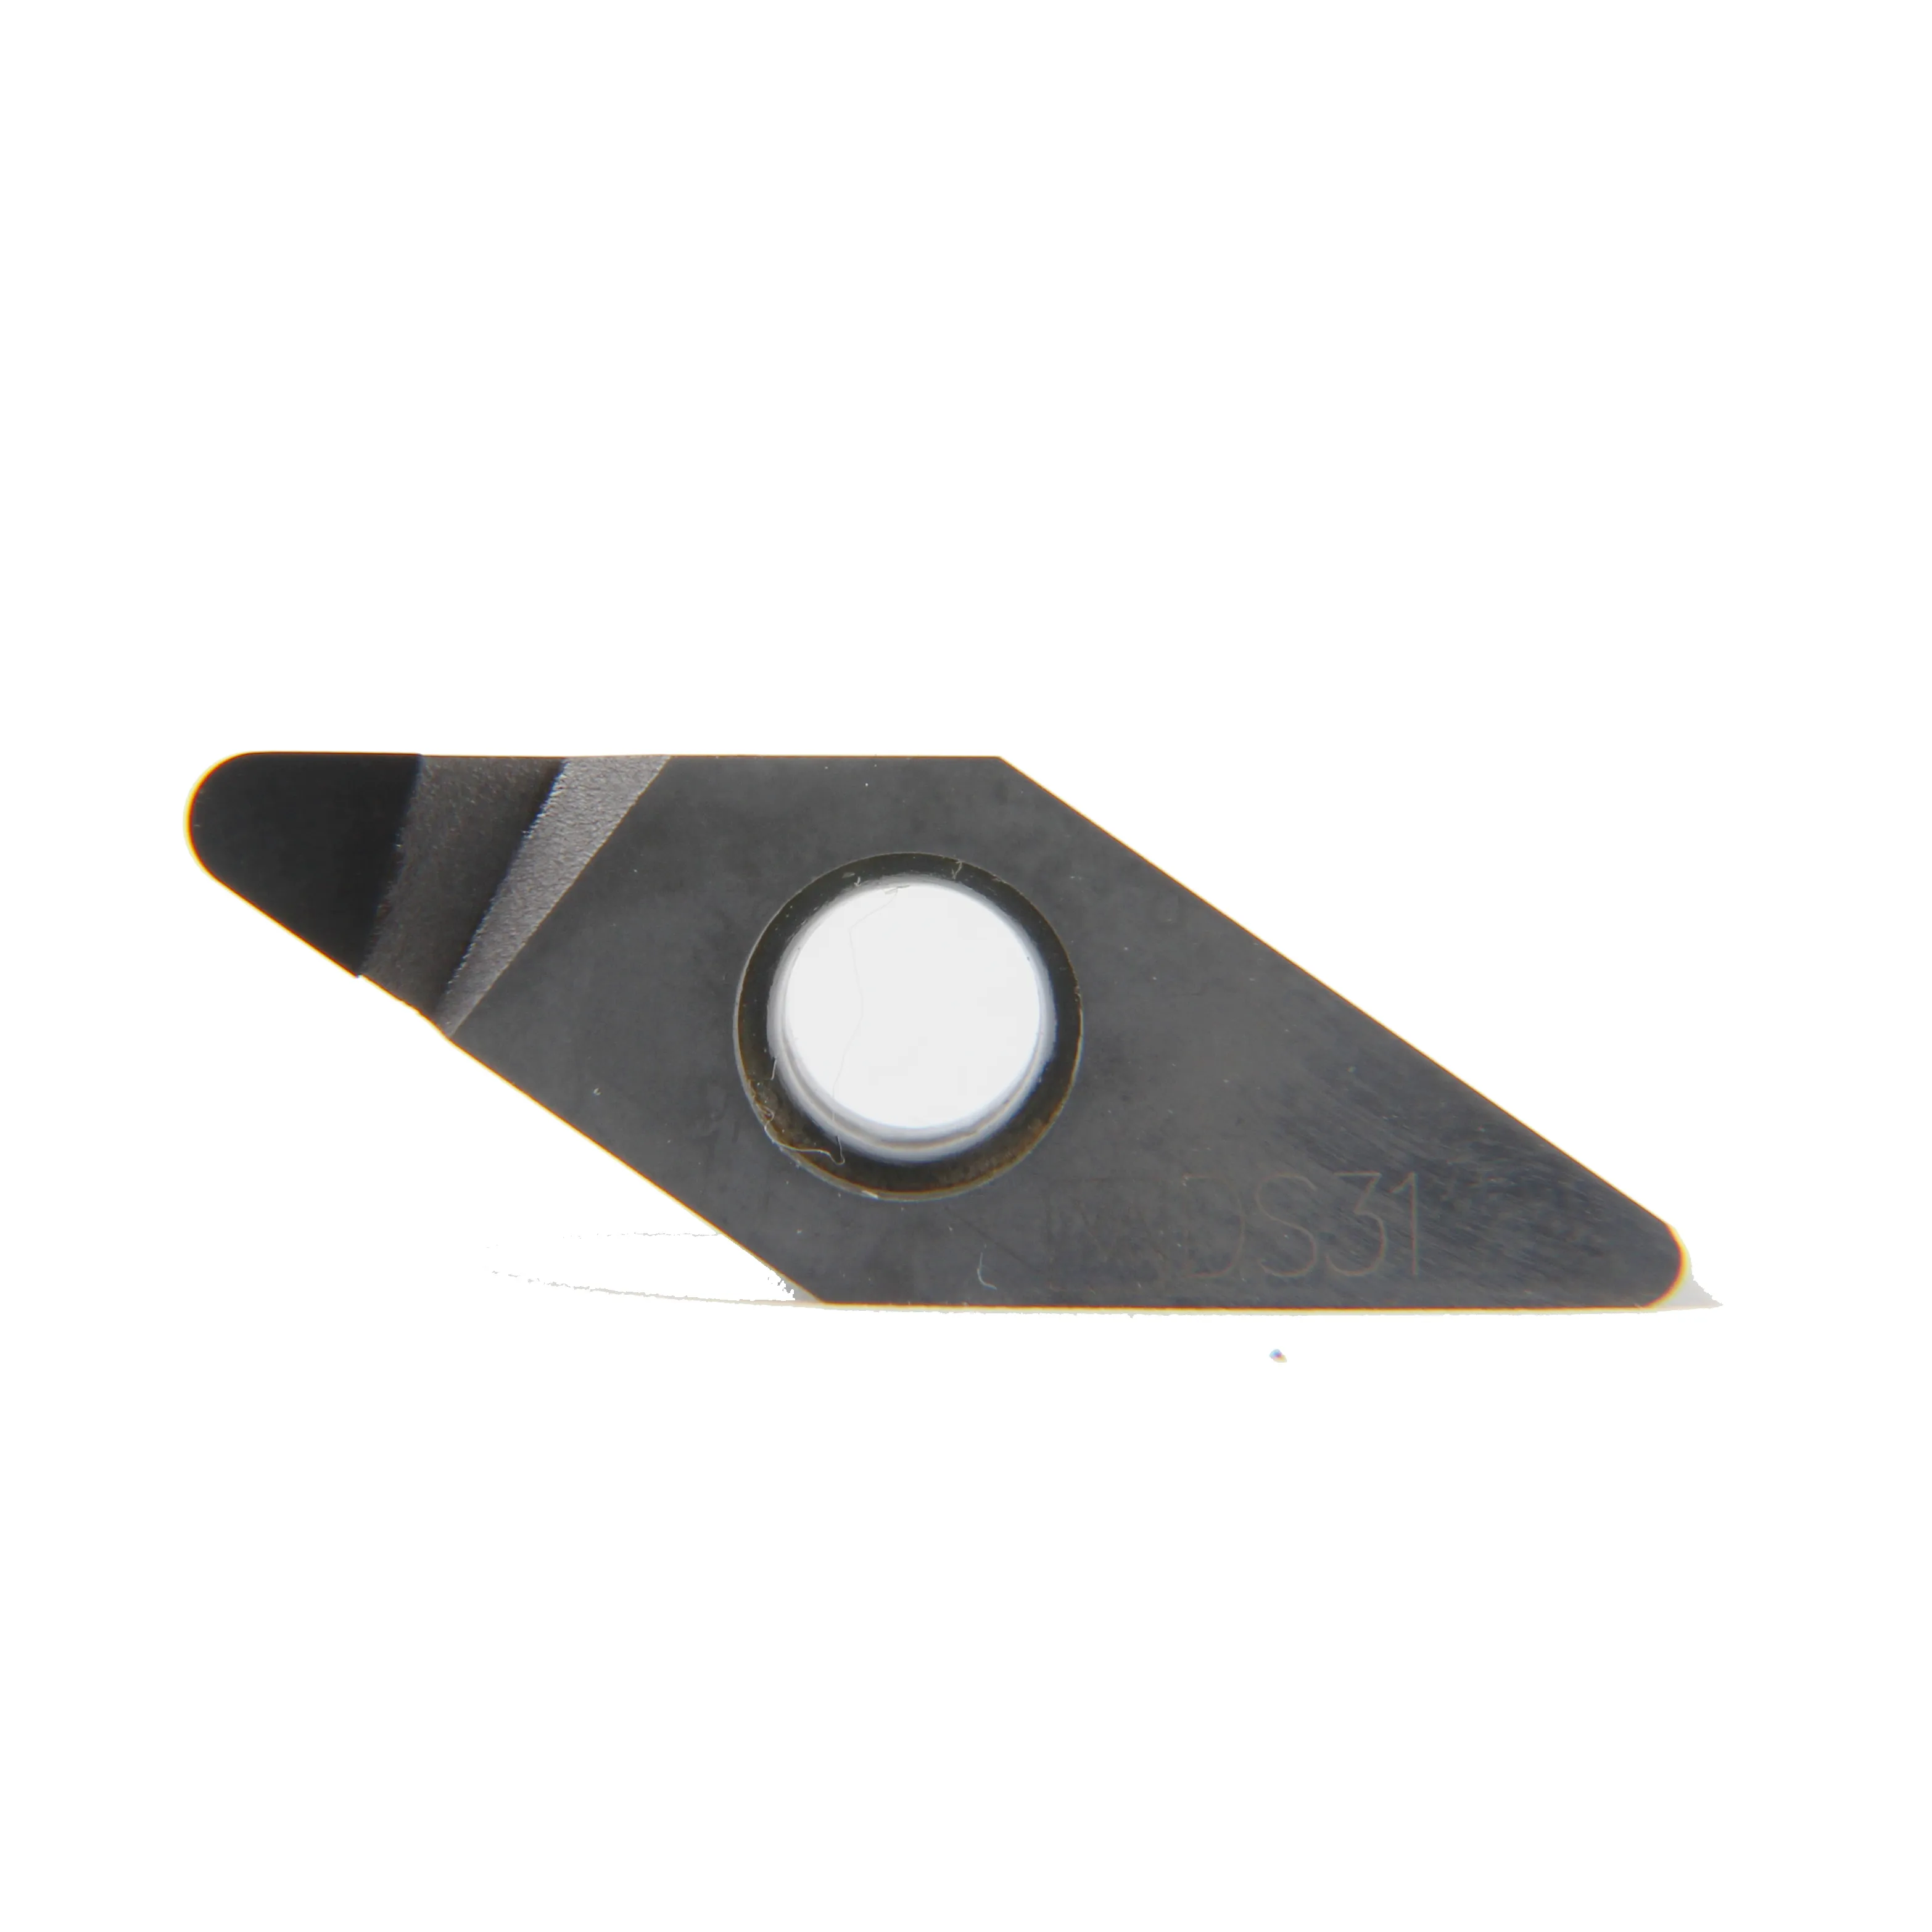 Pcd Cbn Insert Diamond Carbide Blade Inserts Draaigereedschappen Voor Draaien